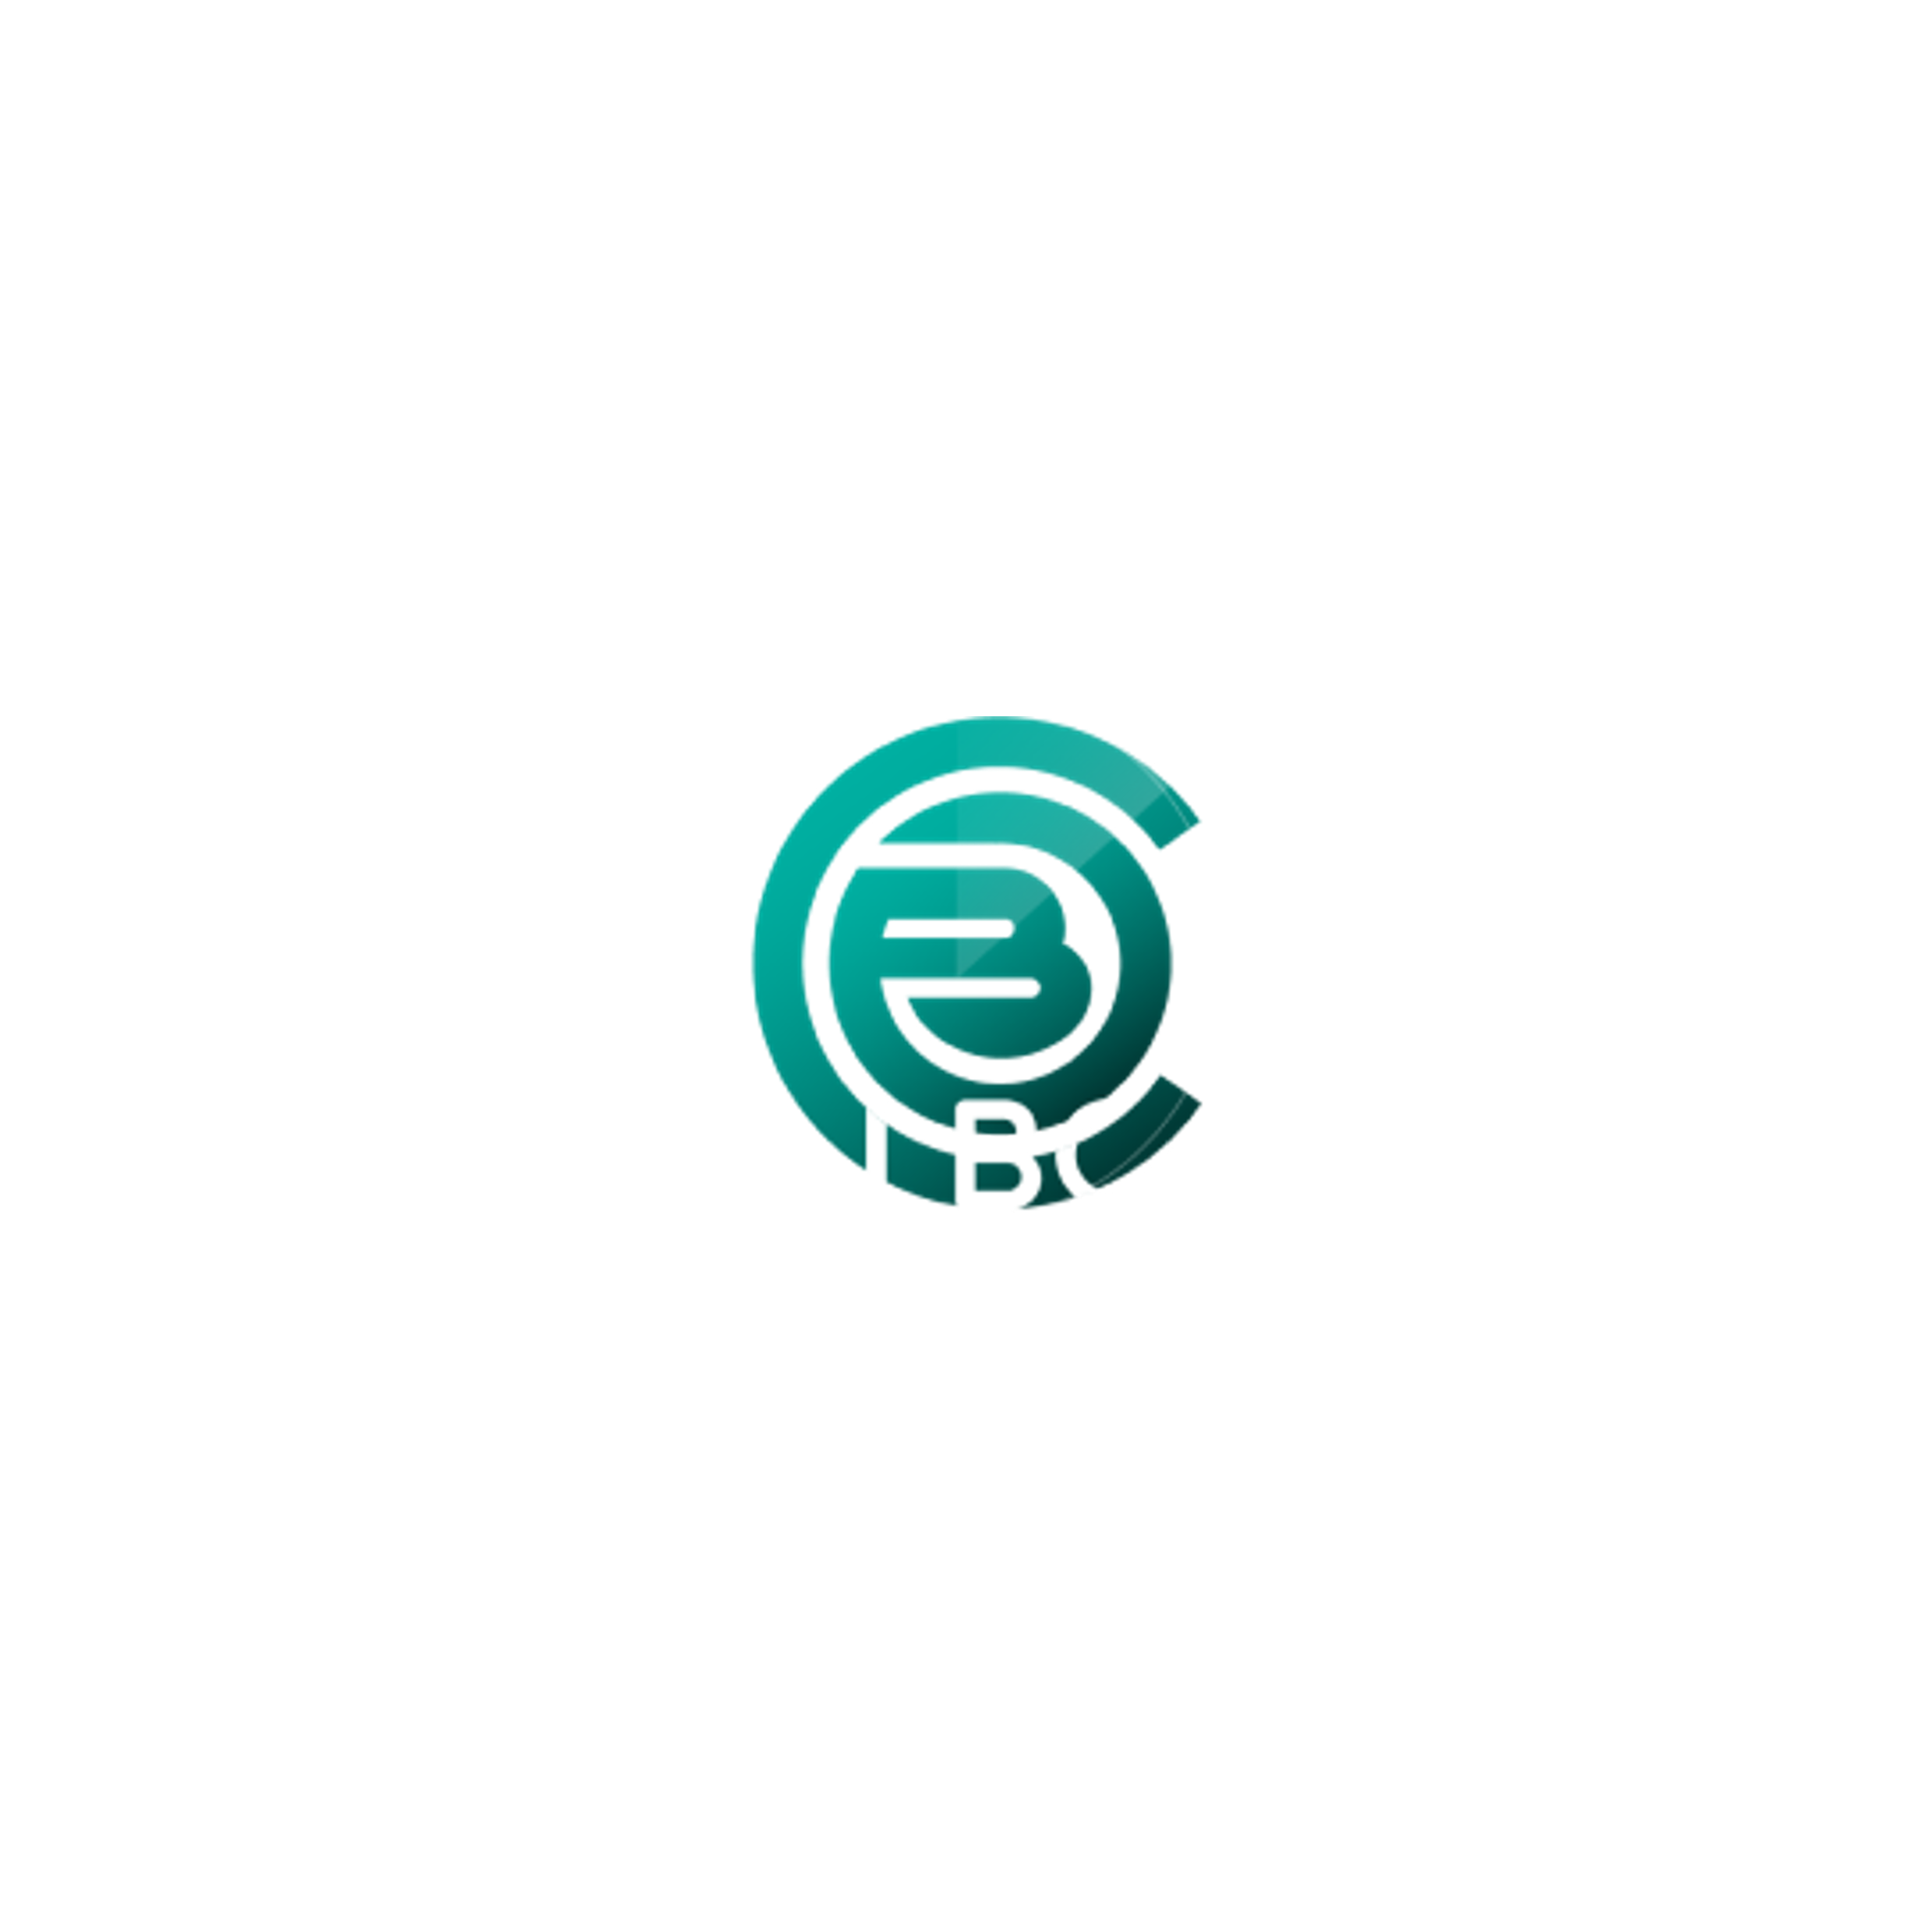 Cyber On Board